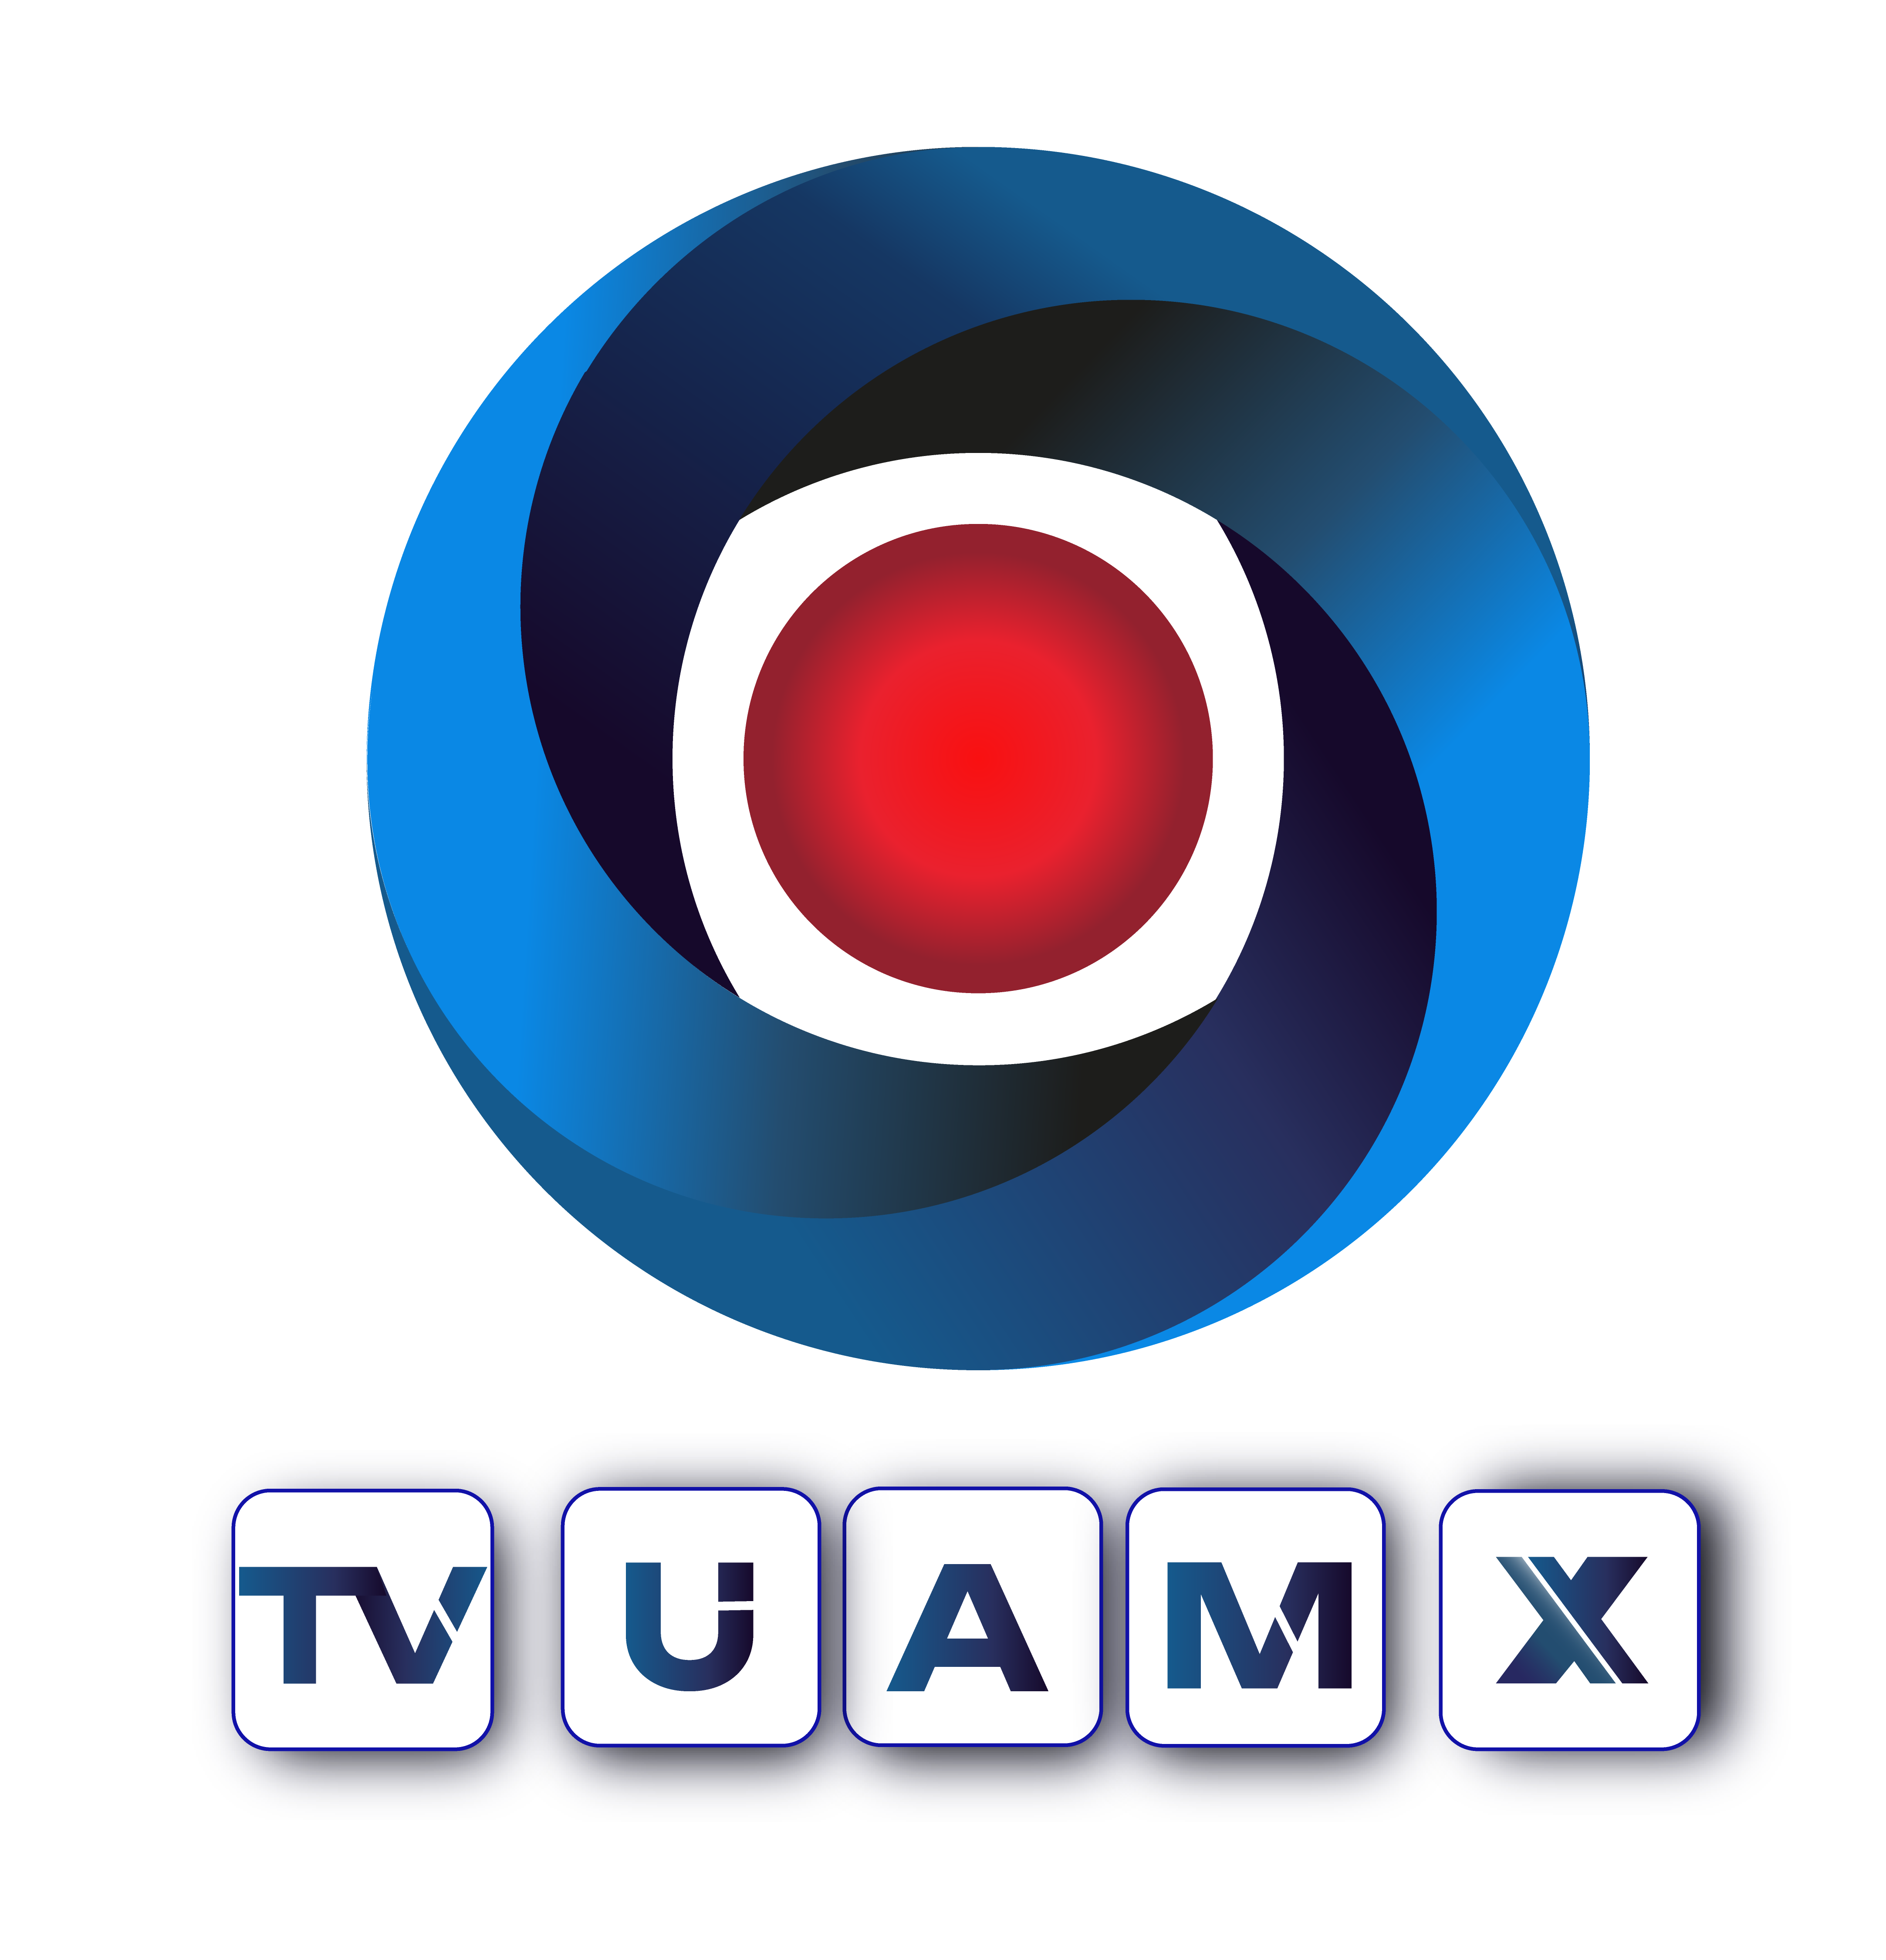 TV UAMX